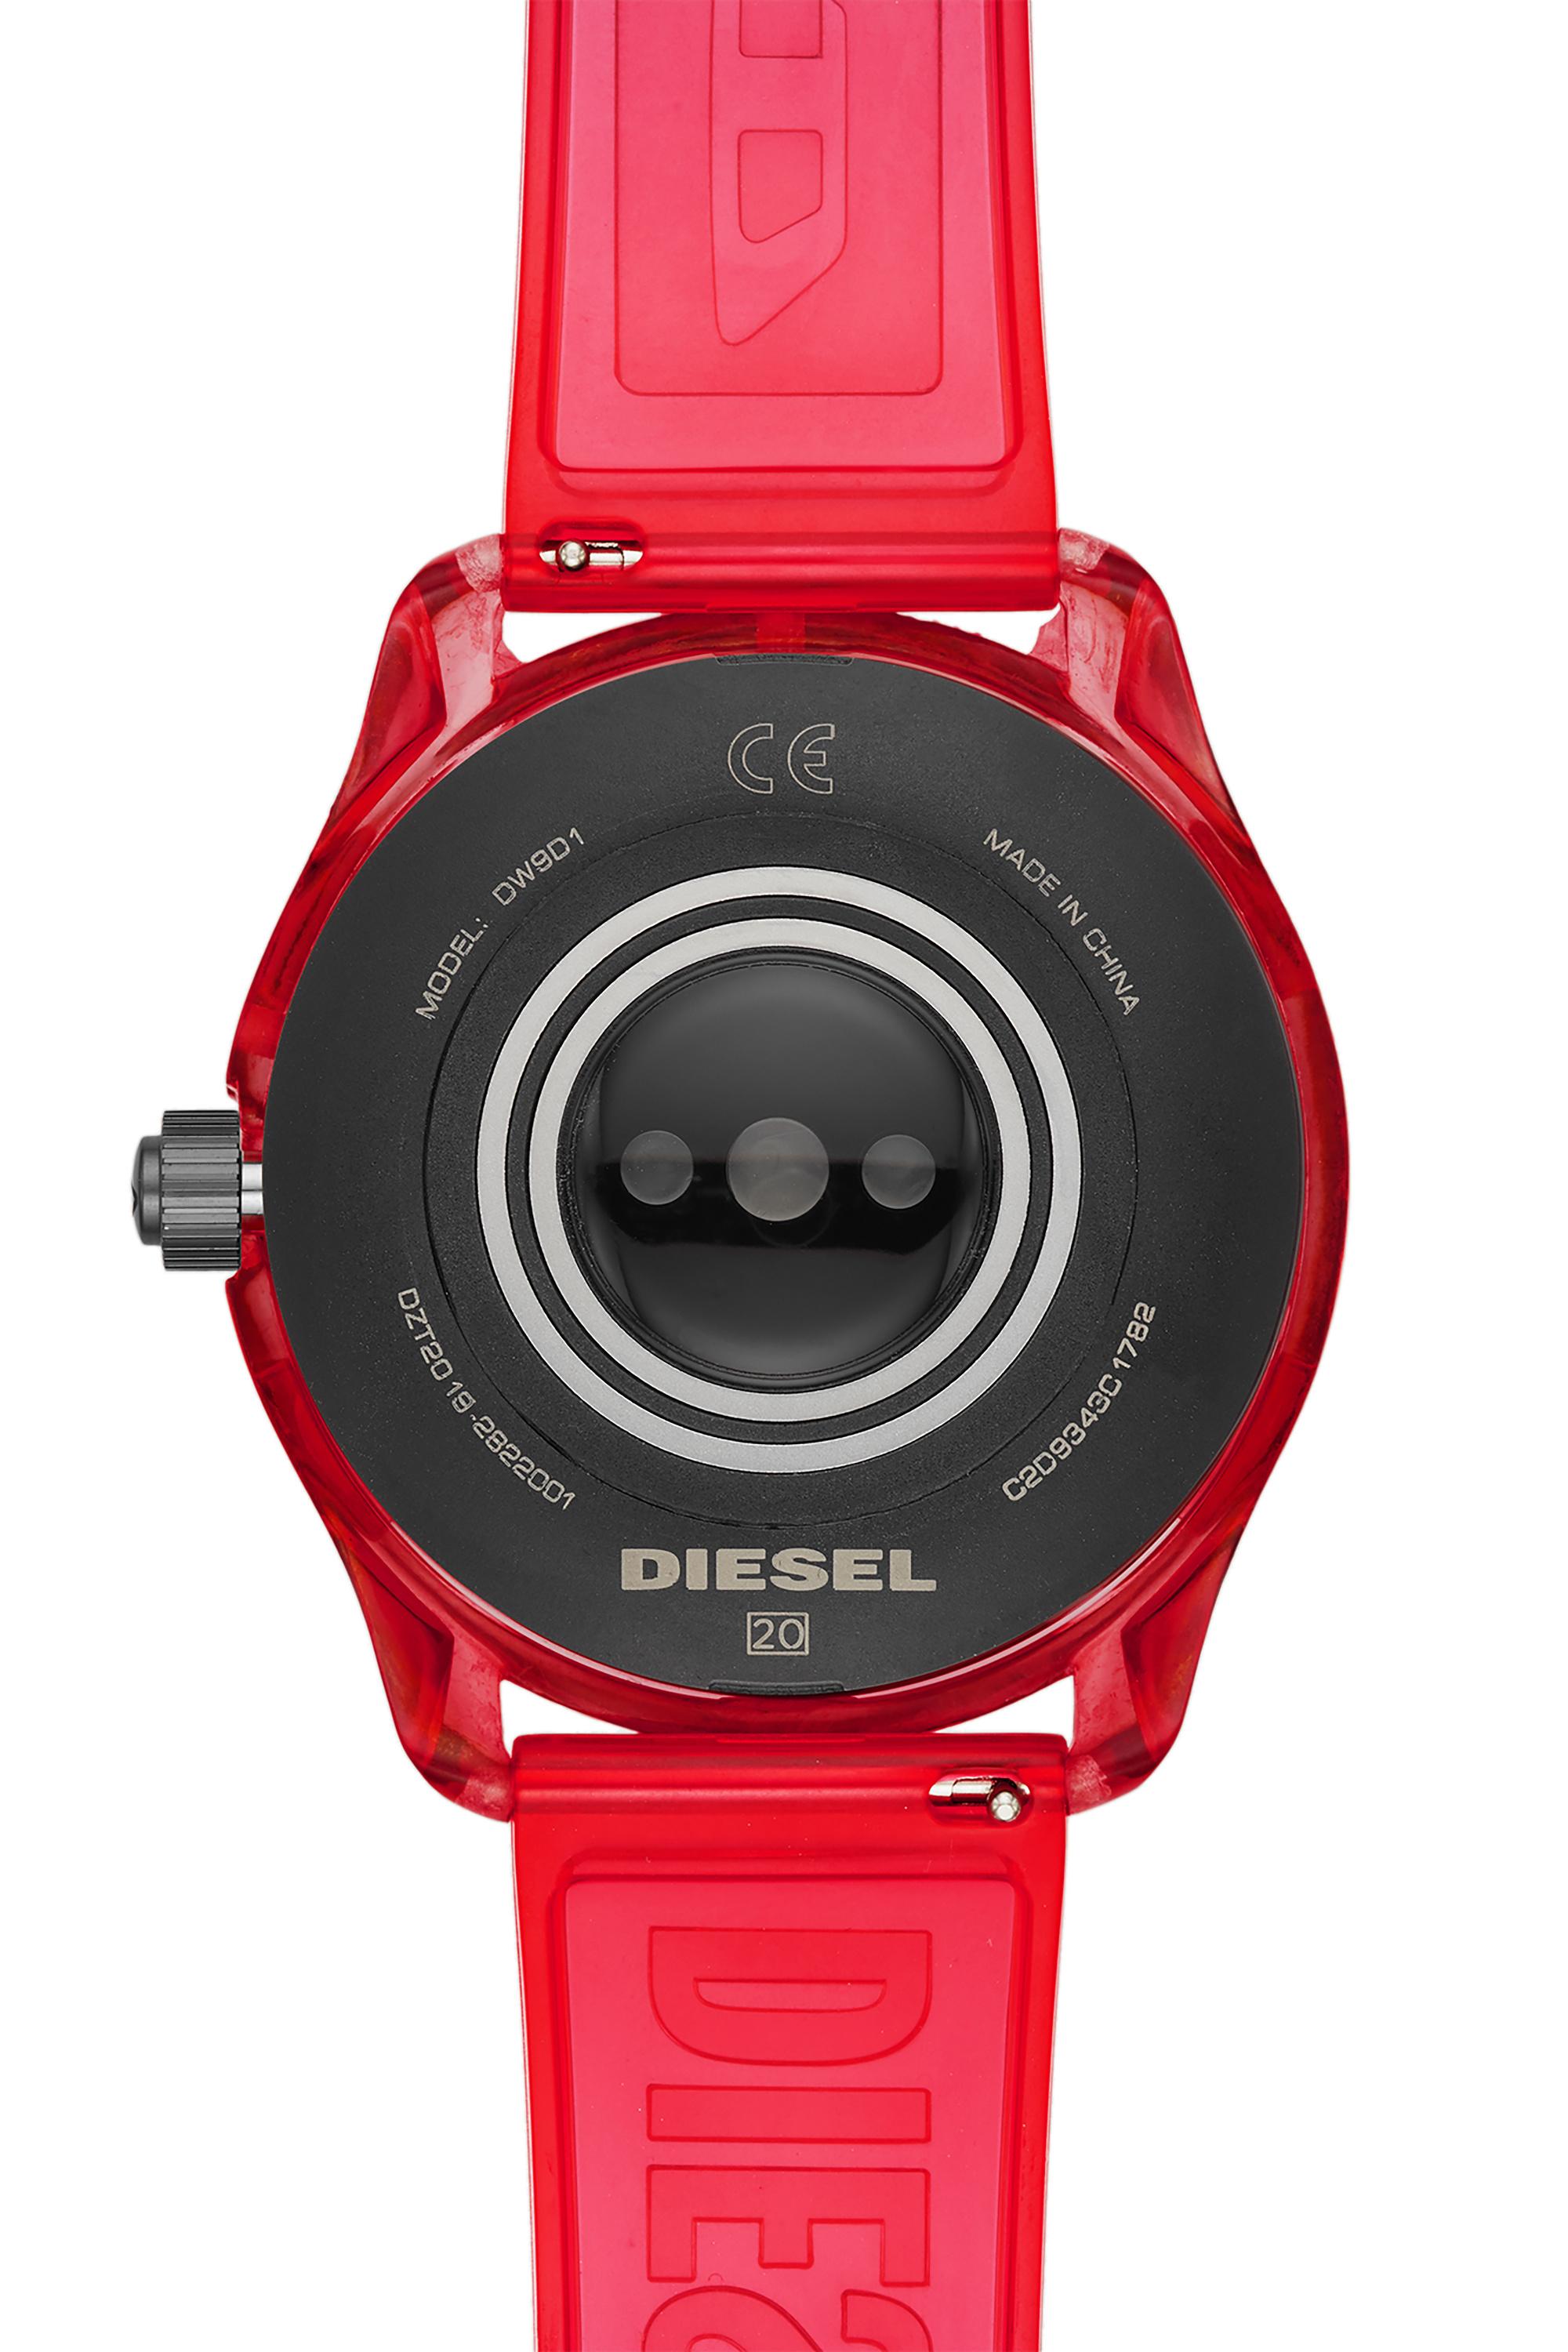 Diesel - DT2019, Rouge - Image 4